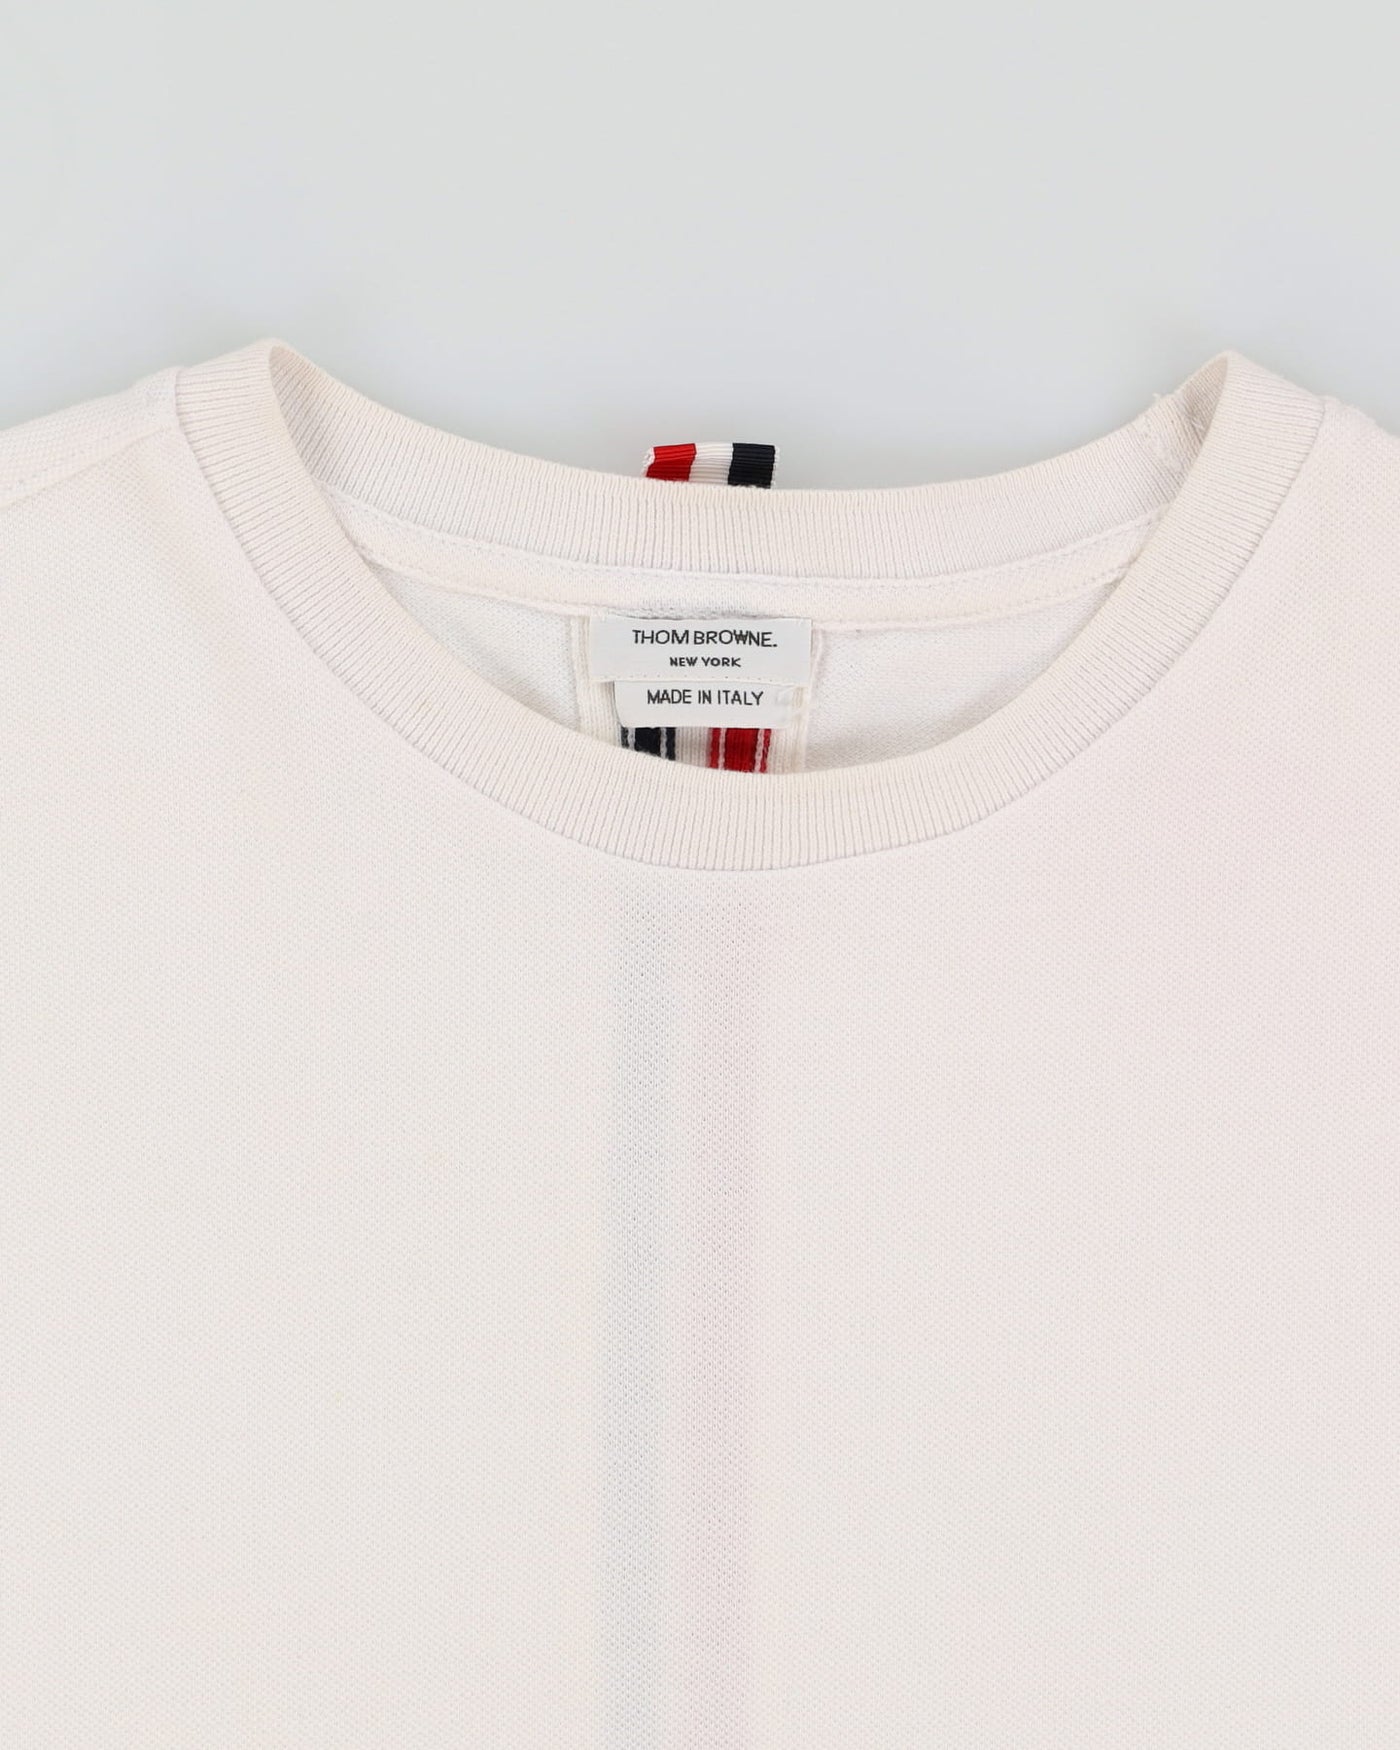 Thom Browne White T-Shirt - M